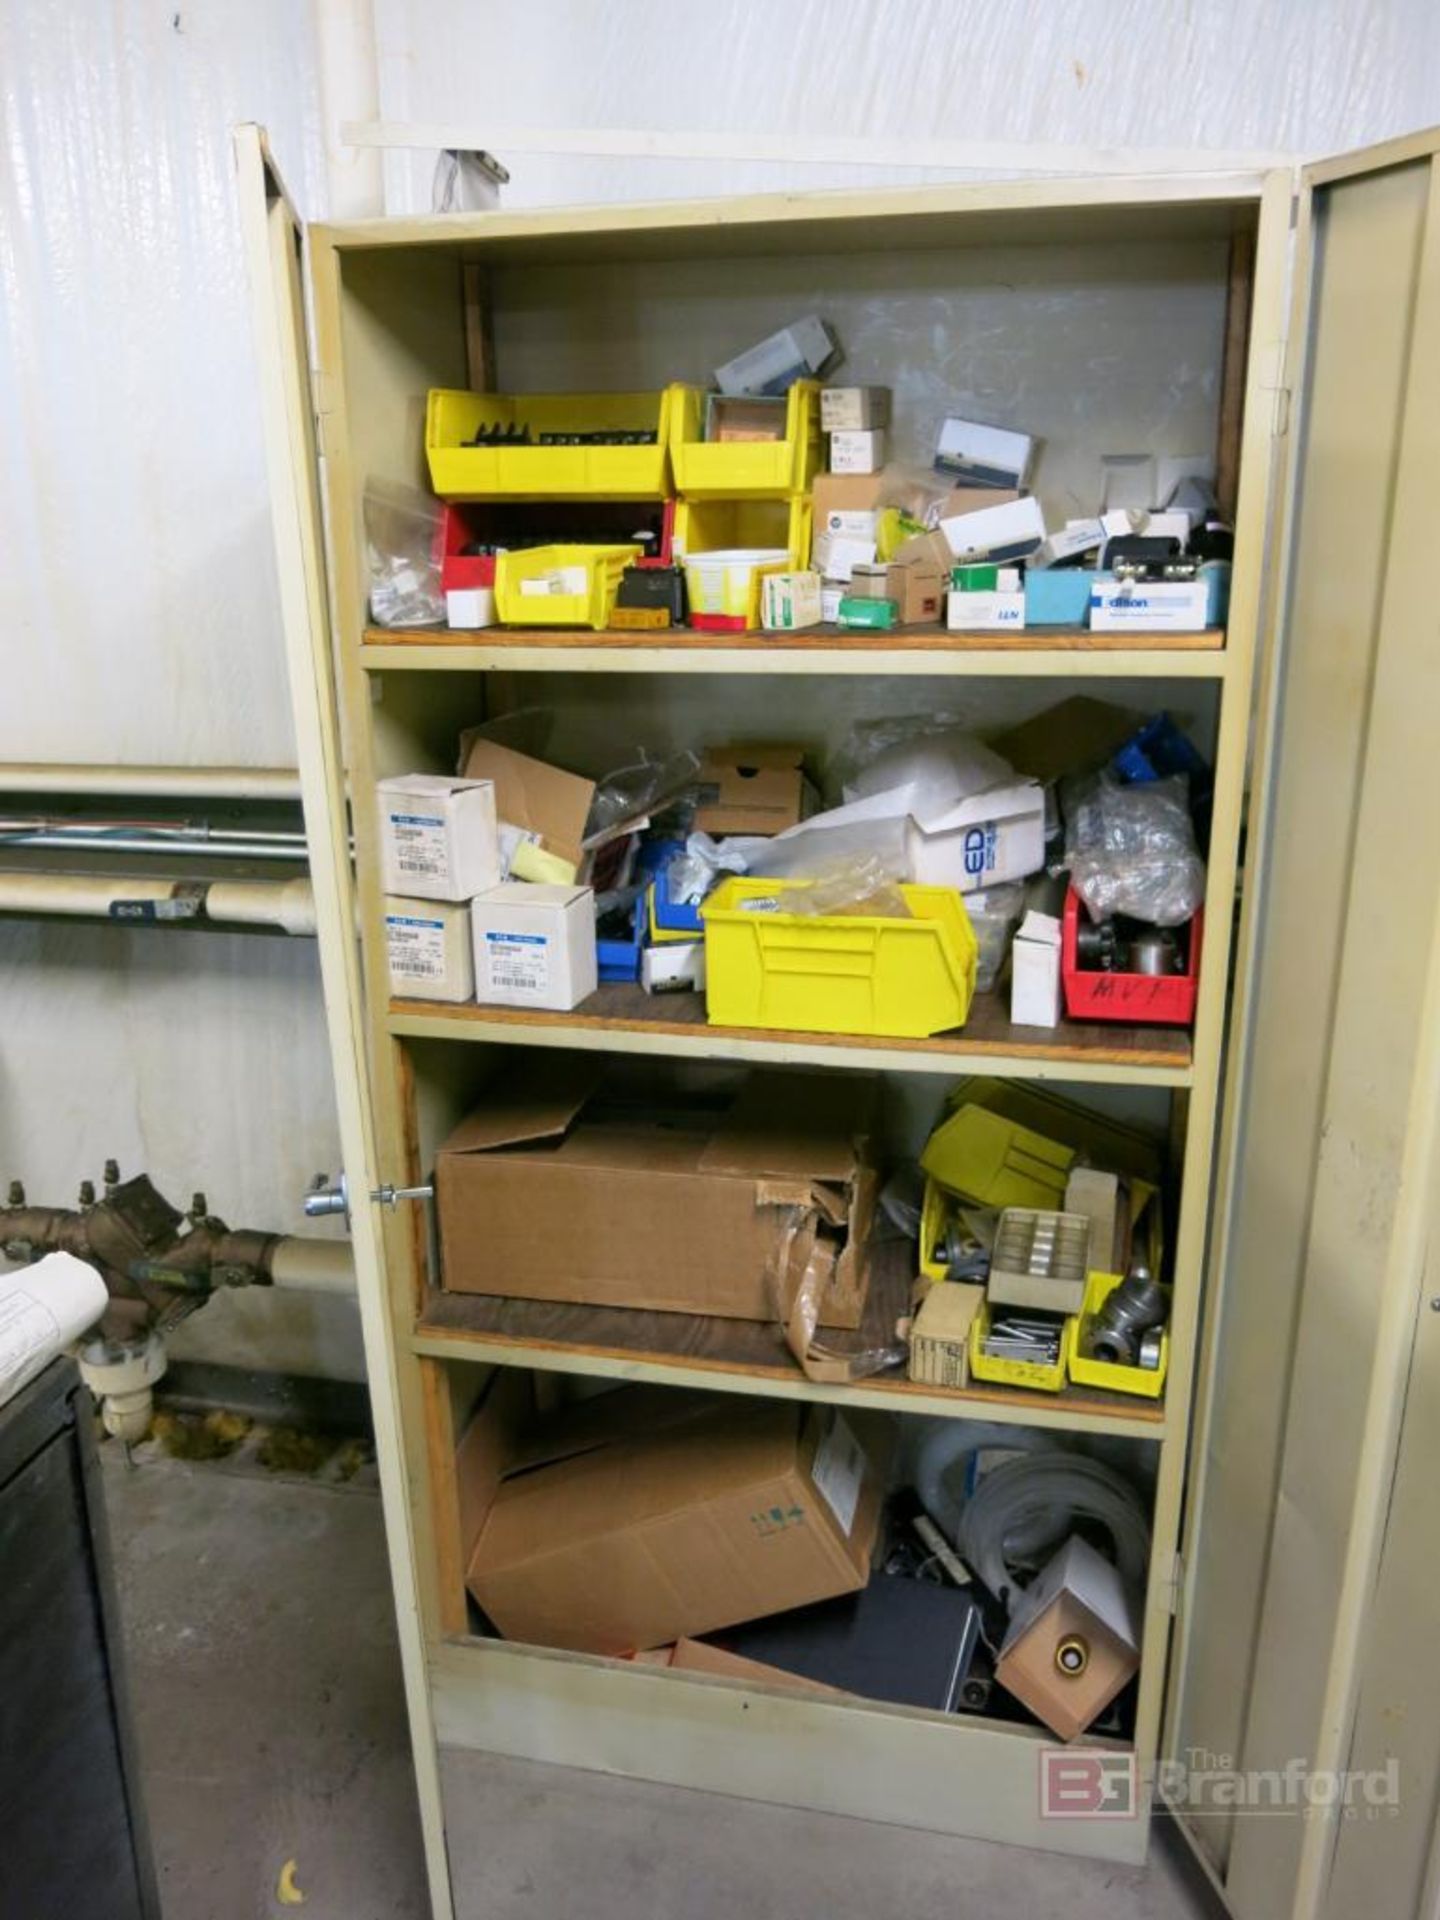 2-Door Metal Cabinet, Medium Duty Shelving w/ Contents